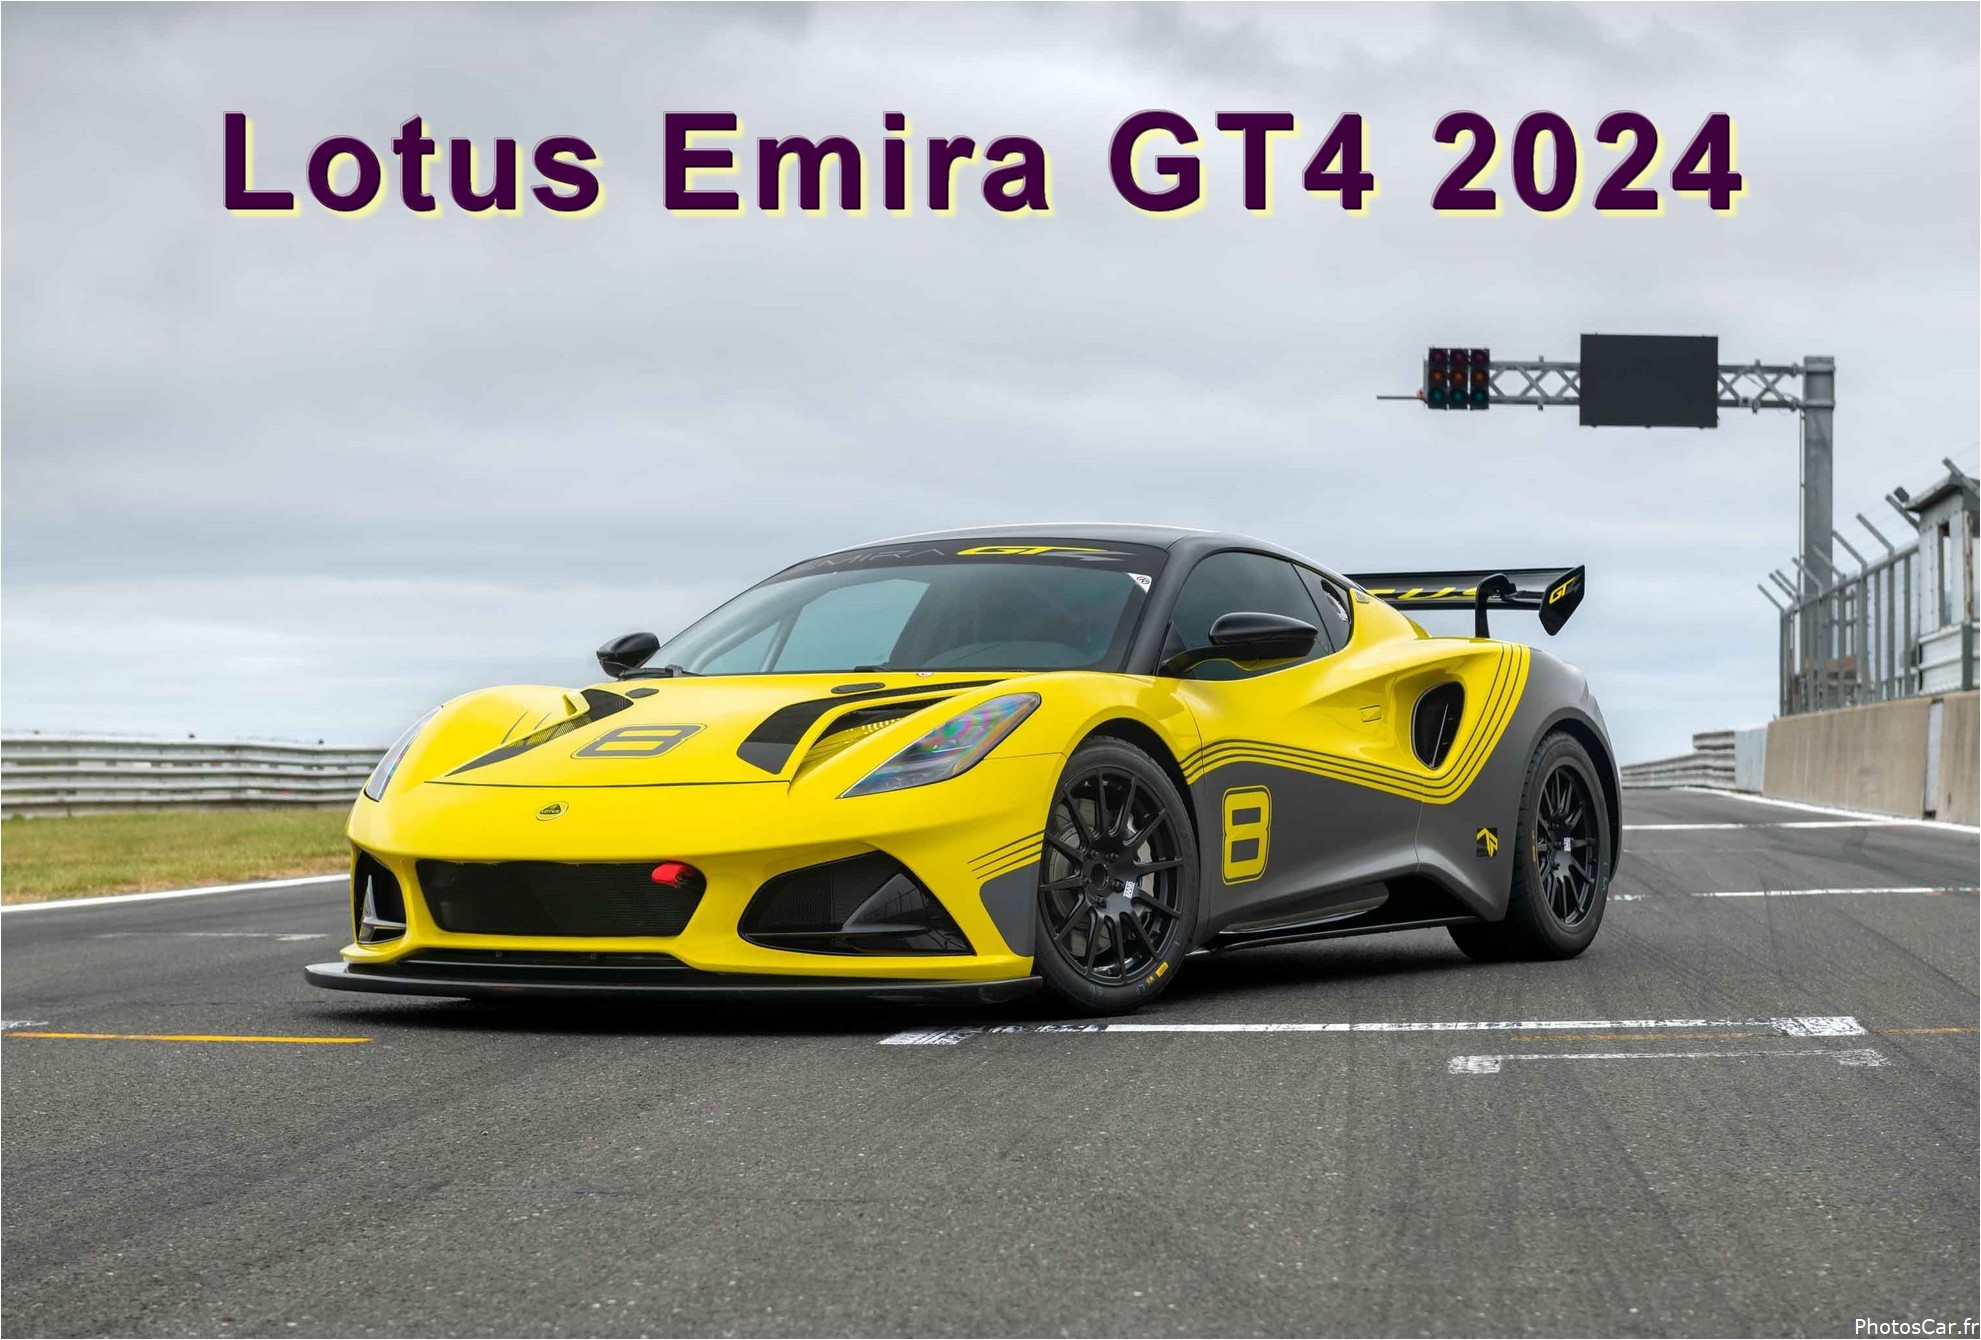 Lotus Emira GT4 2024